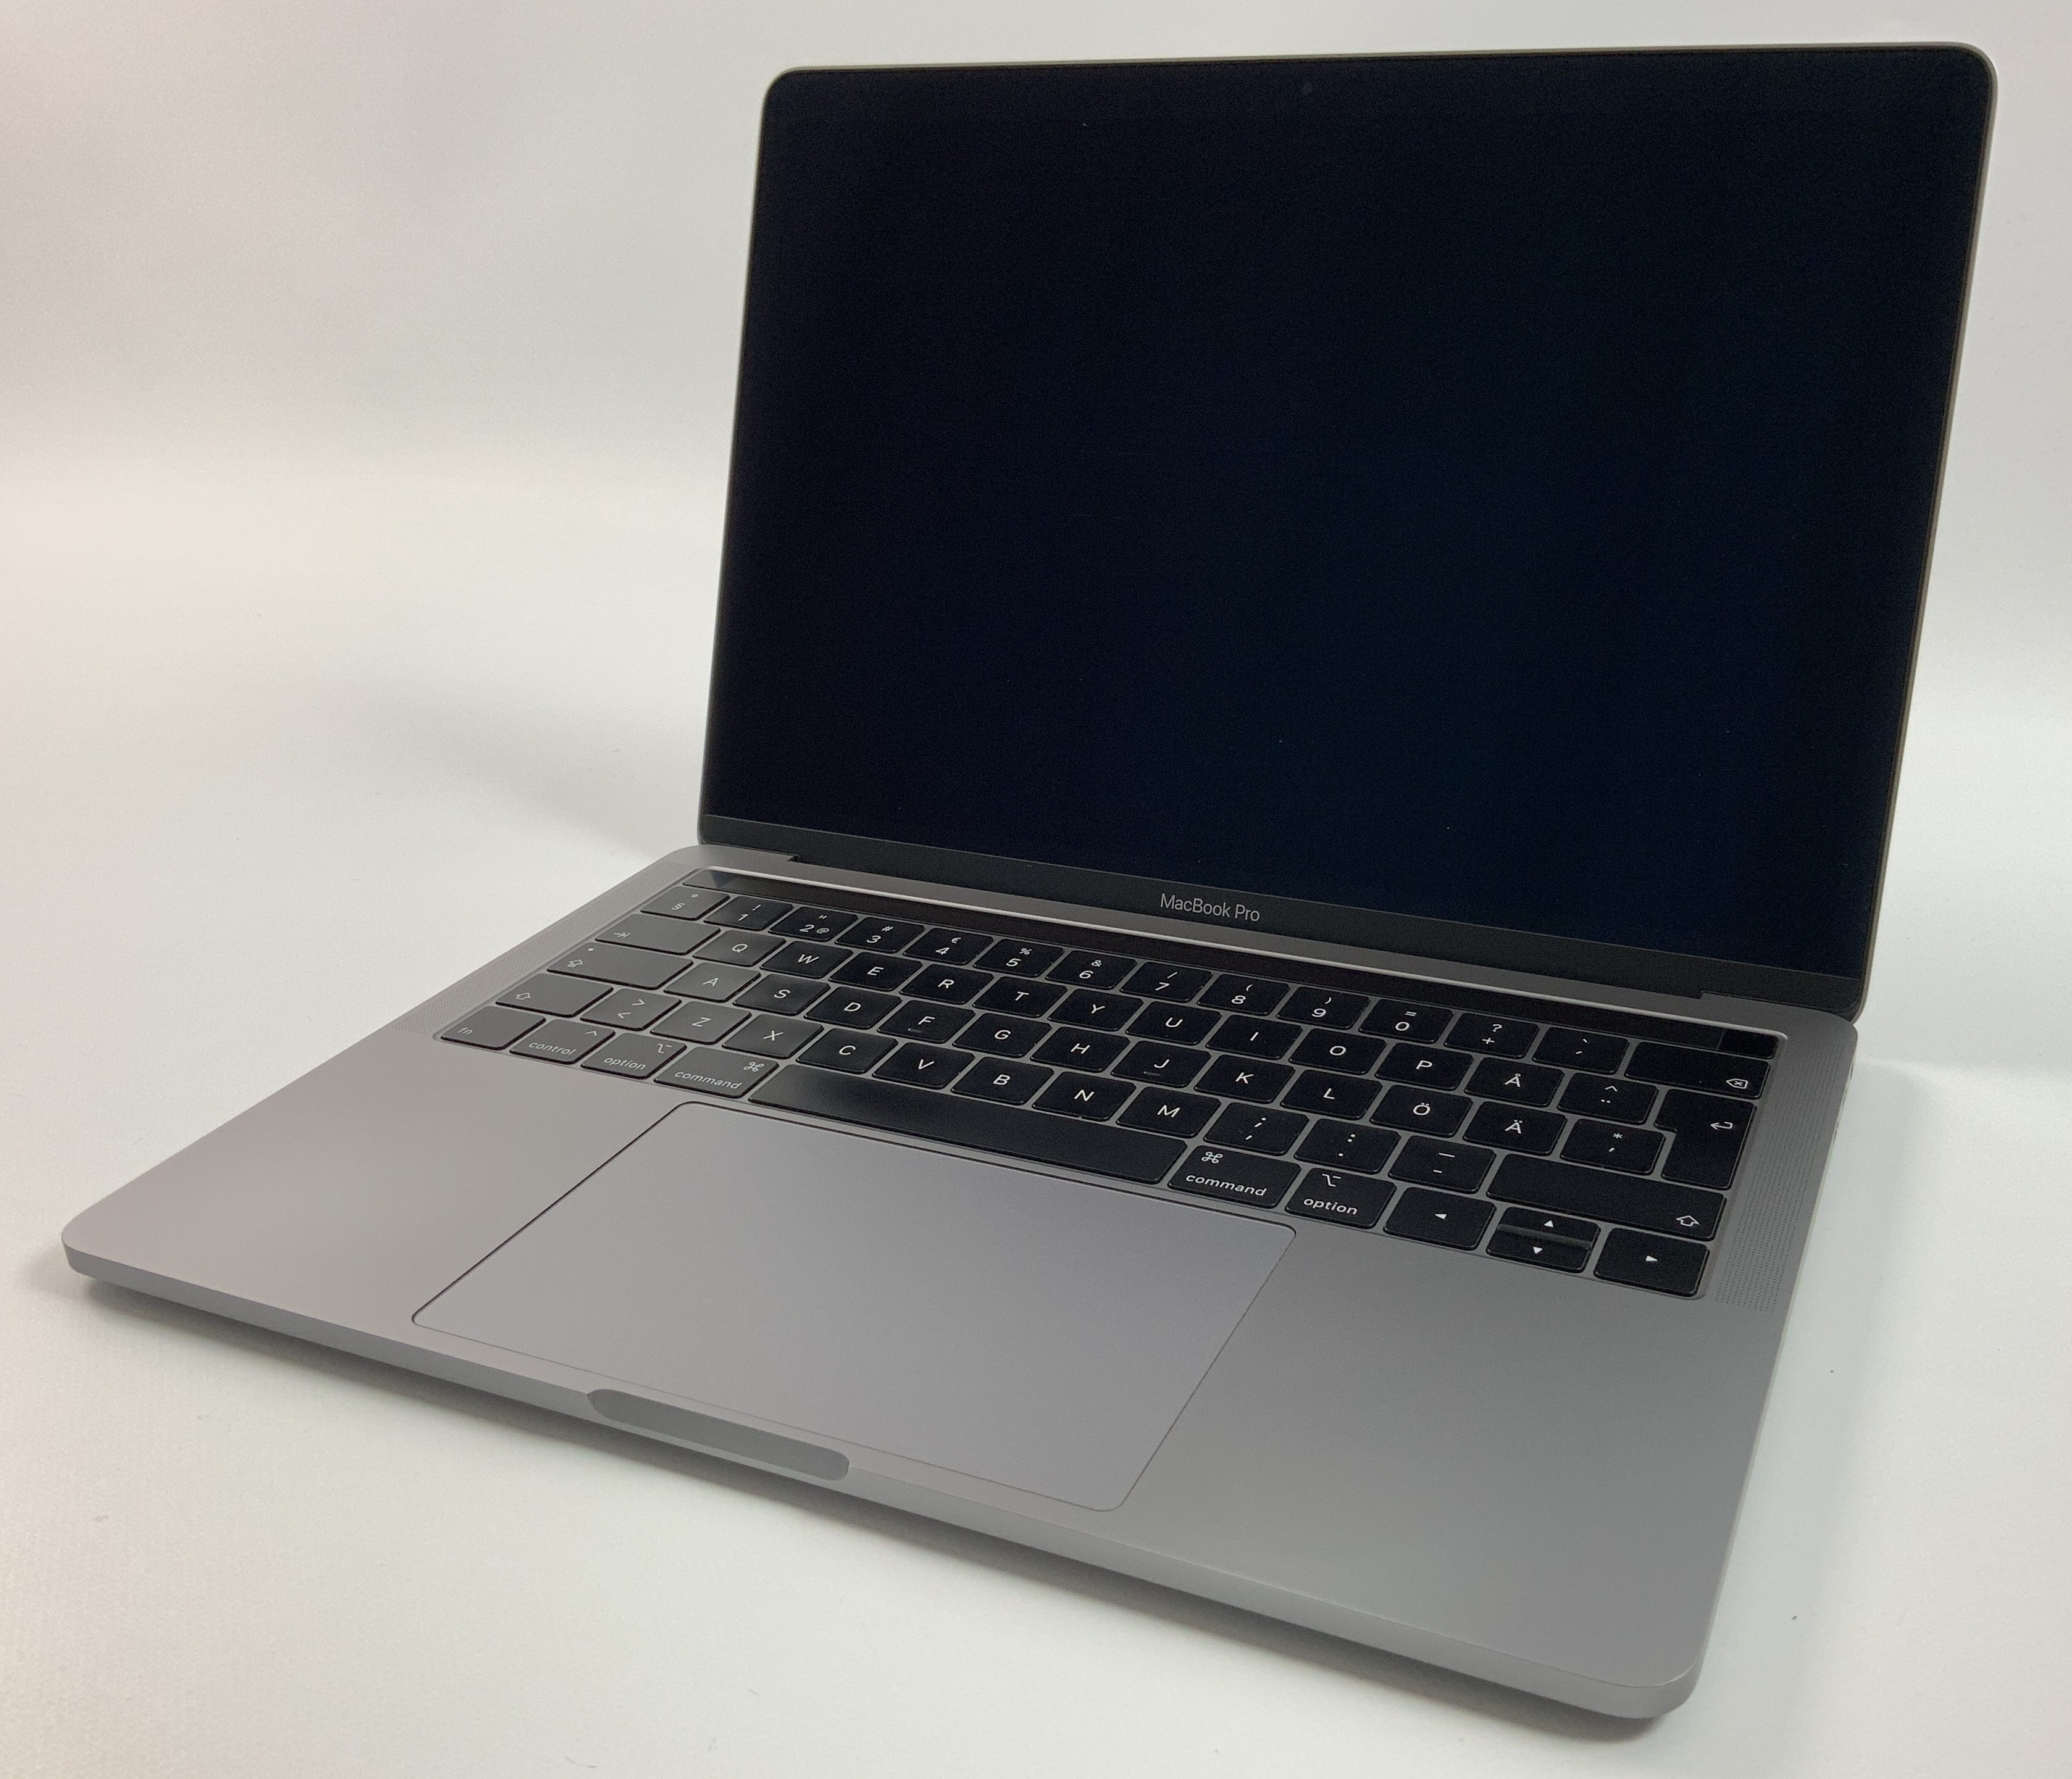 MacBook Pro 13" 4TBT Mid 2019 (Intel Quad-Core i5 2.4 GHz 16 GB RAM 512 GB SSD), Space Gray, Intel Quad-Core i5 2.4 GHz, 16 GB RAM, 512 GB SSD, obraz 1